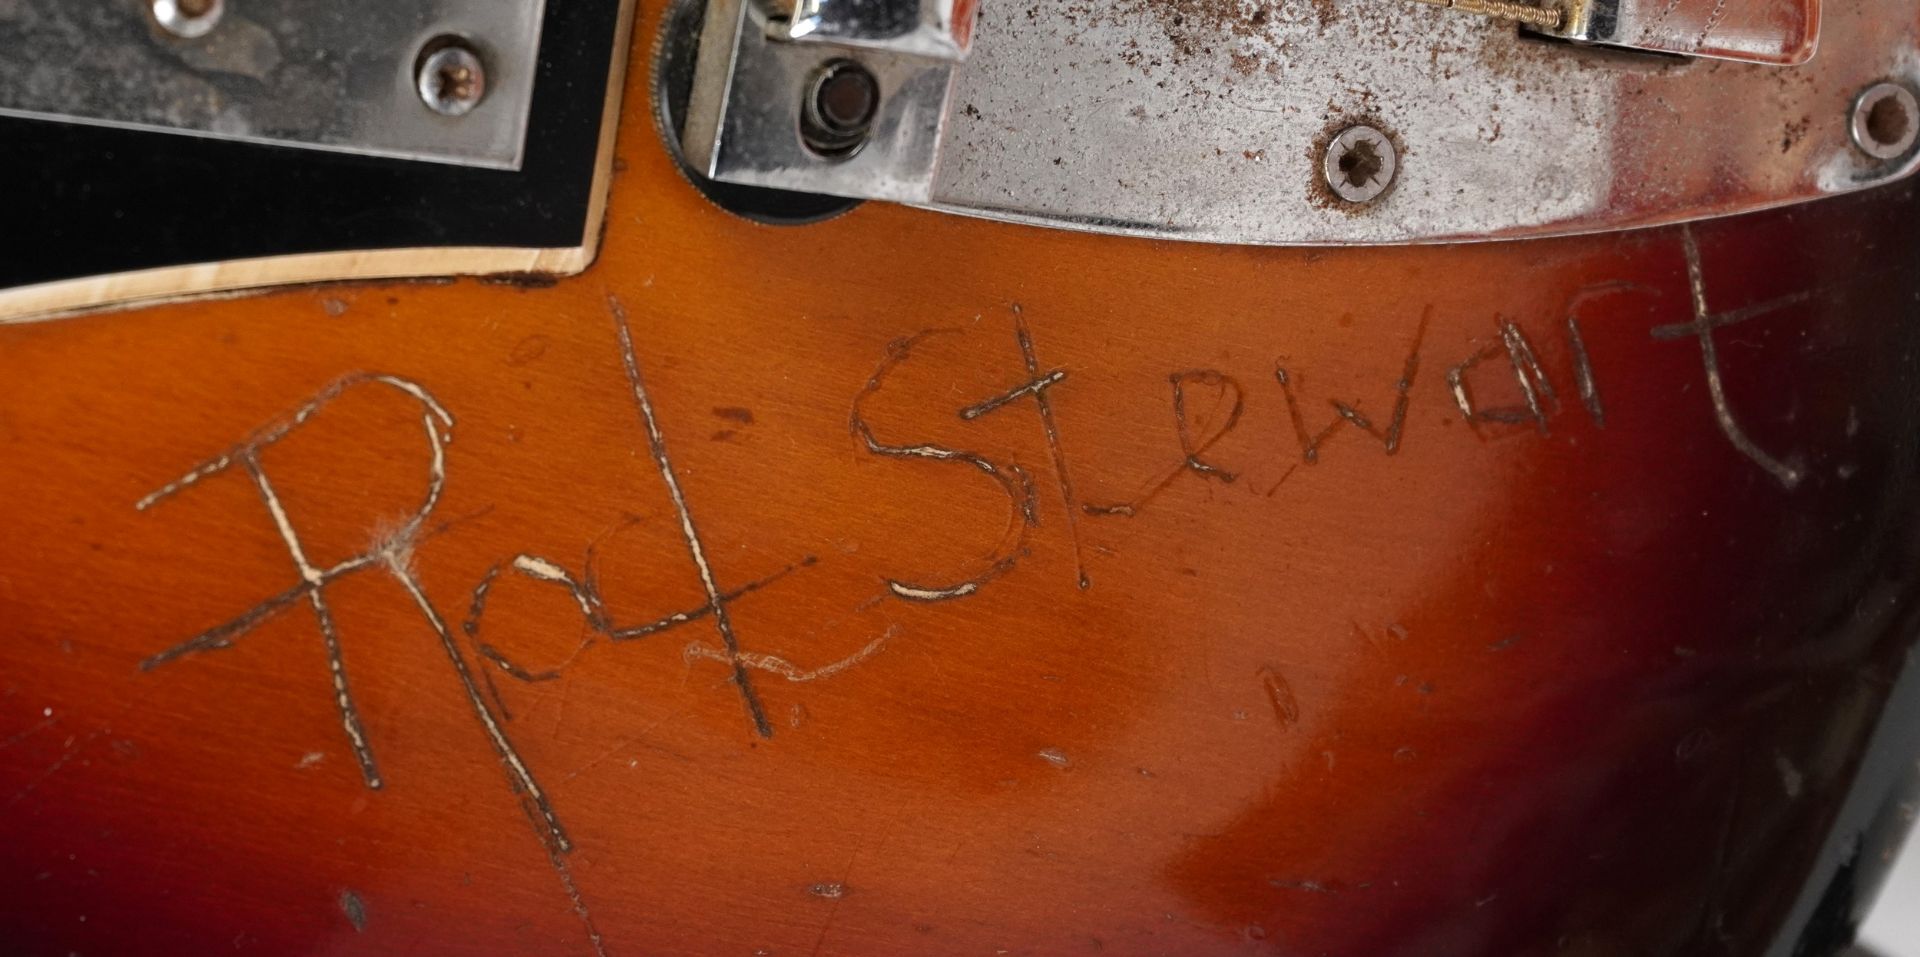 Rod Stewart interest Seamus six string electric guitar engrave Rod Stewart by Rod Stewart whilst - Image 6 of 8